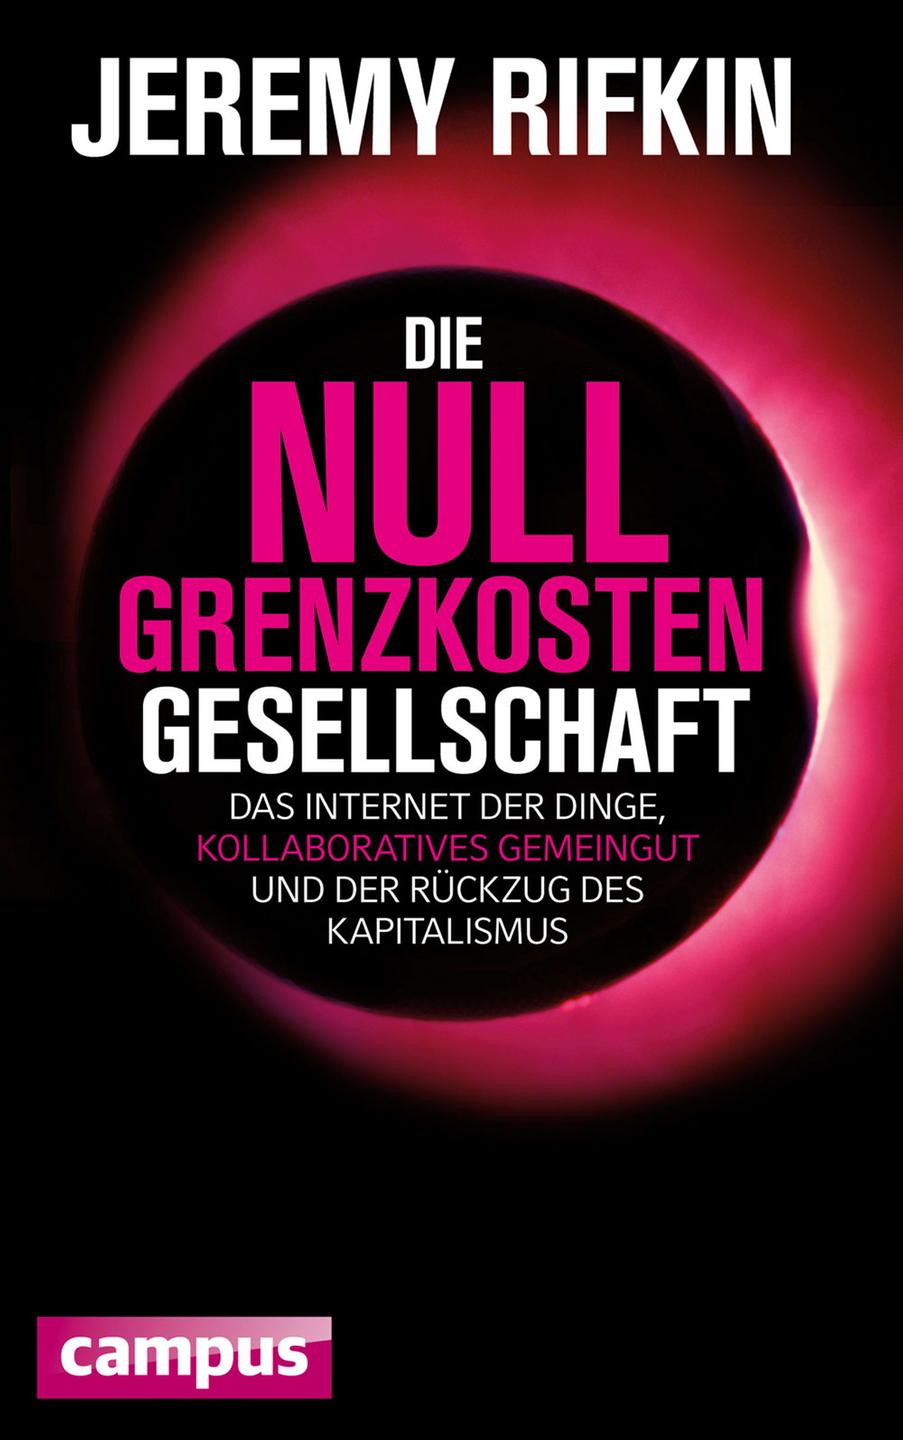 Buchcover: "Die Null-Grenzkosten-Gesellschaft: Das Internet der Dinge,kollaboratives Gemeingut und der Rückzug des Kapitalismus" von Jeremy Rifkin